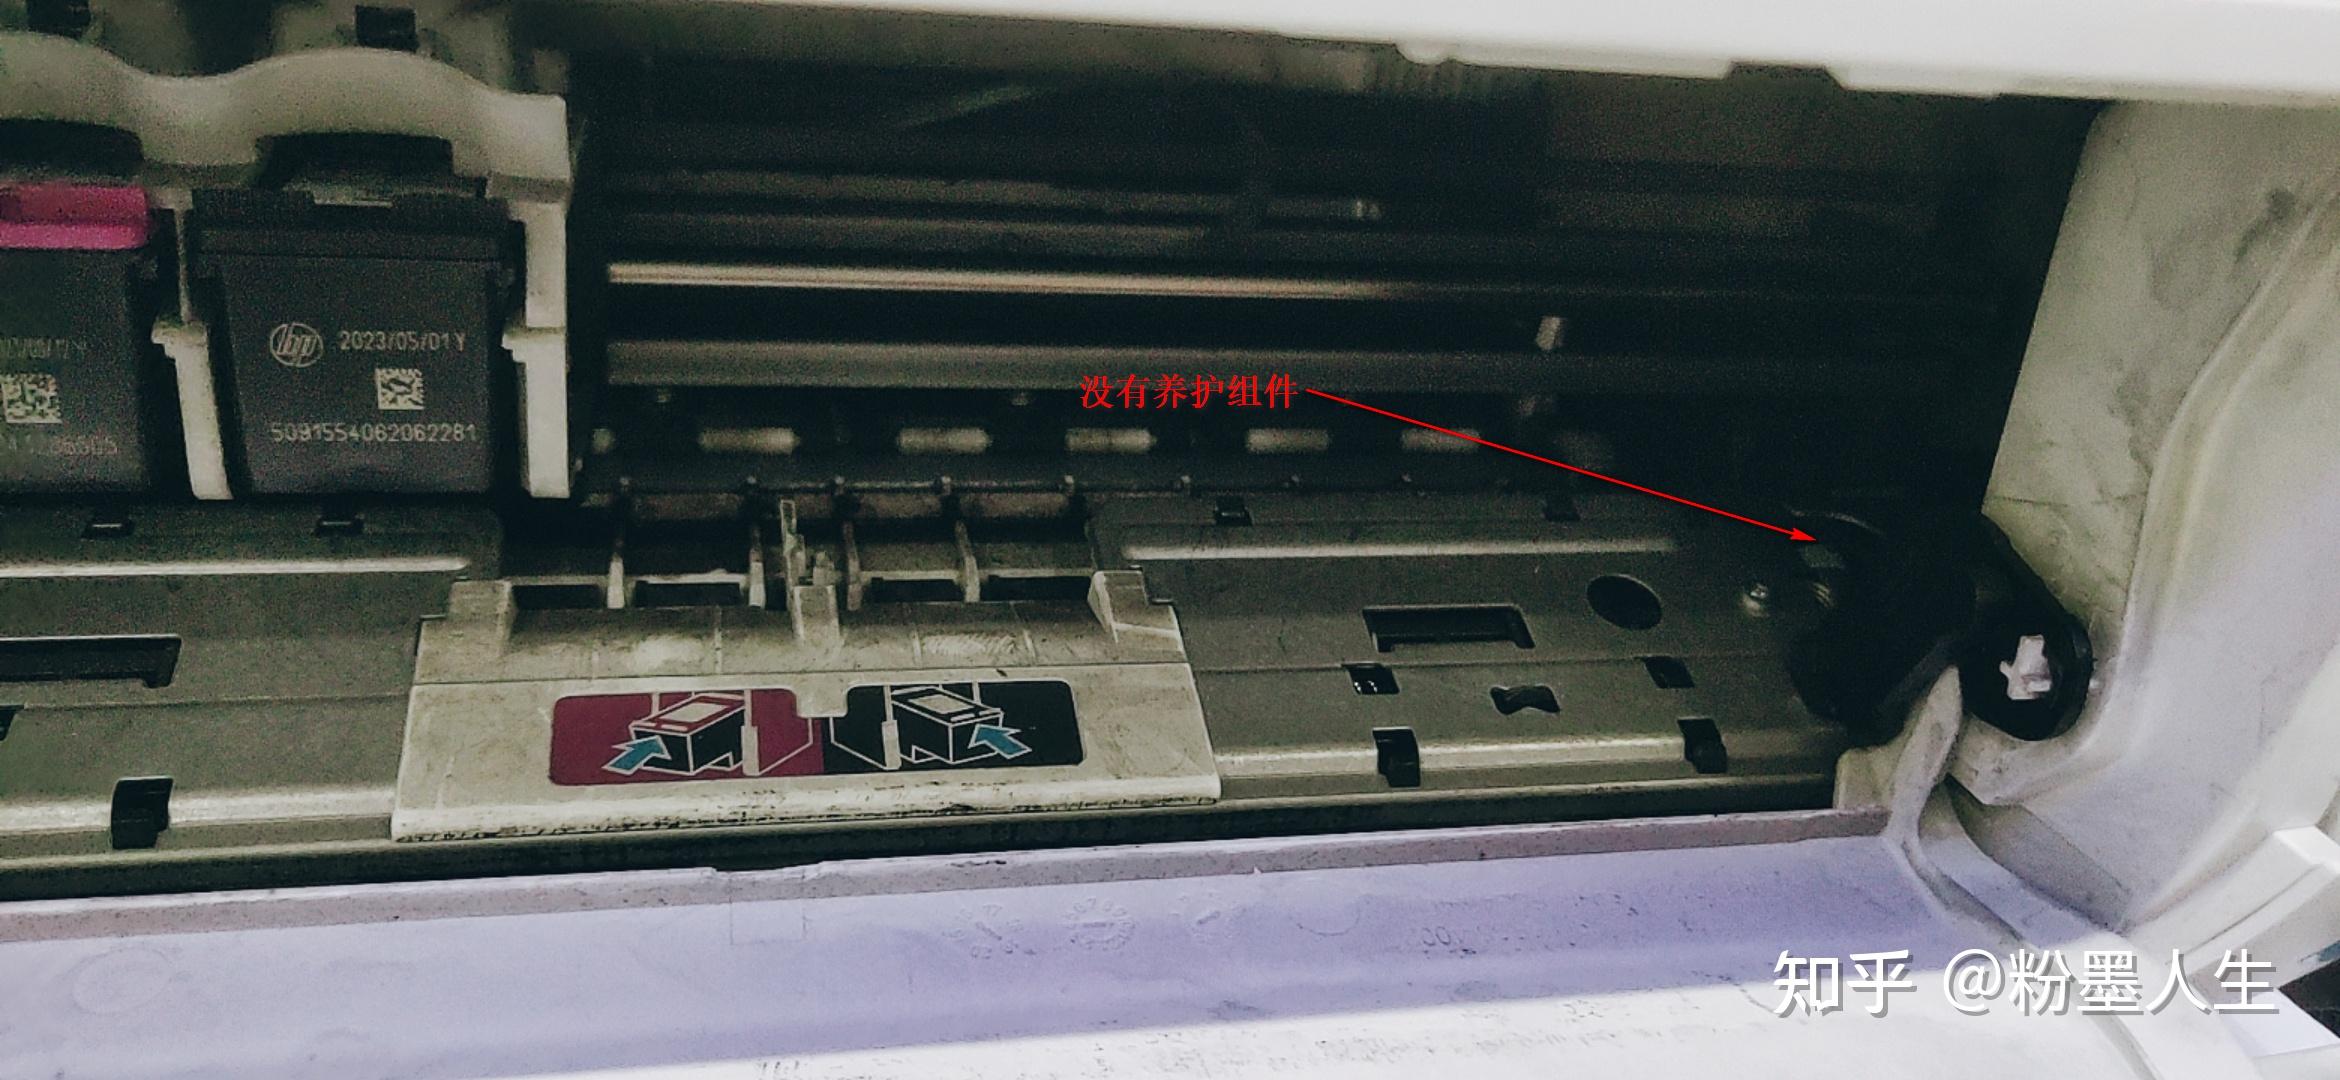 拆解爱普生R330喷墨打印机 - 拆机乐园 数码之家